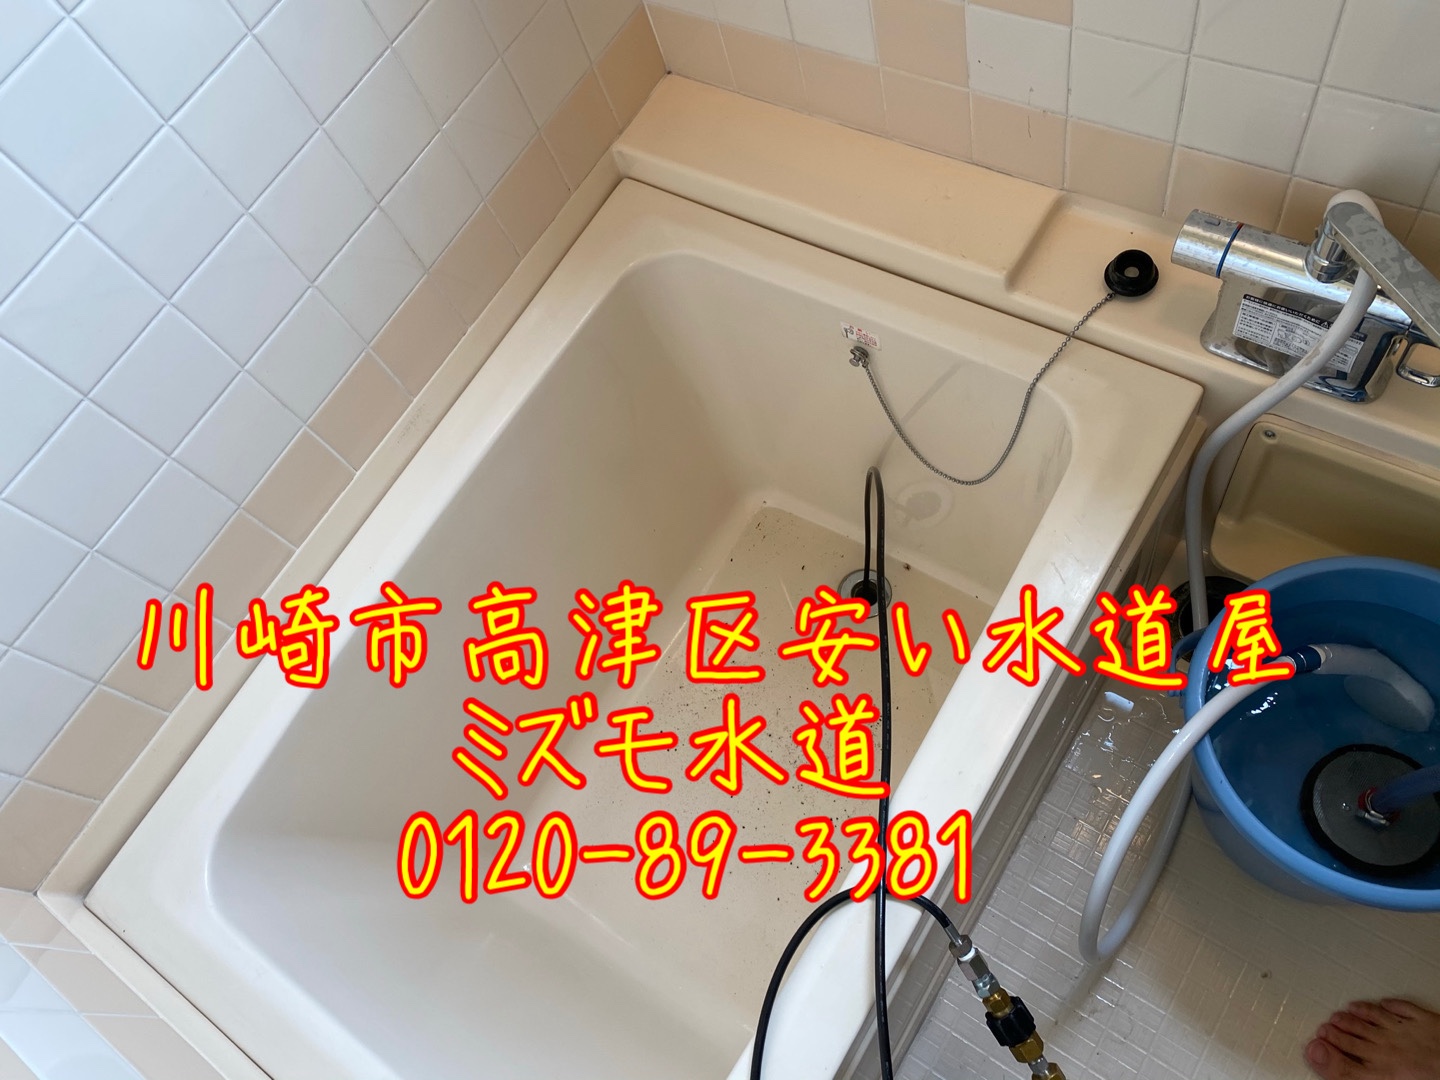 高津区風呂高圧洗浄つまり修理会社
